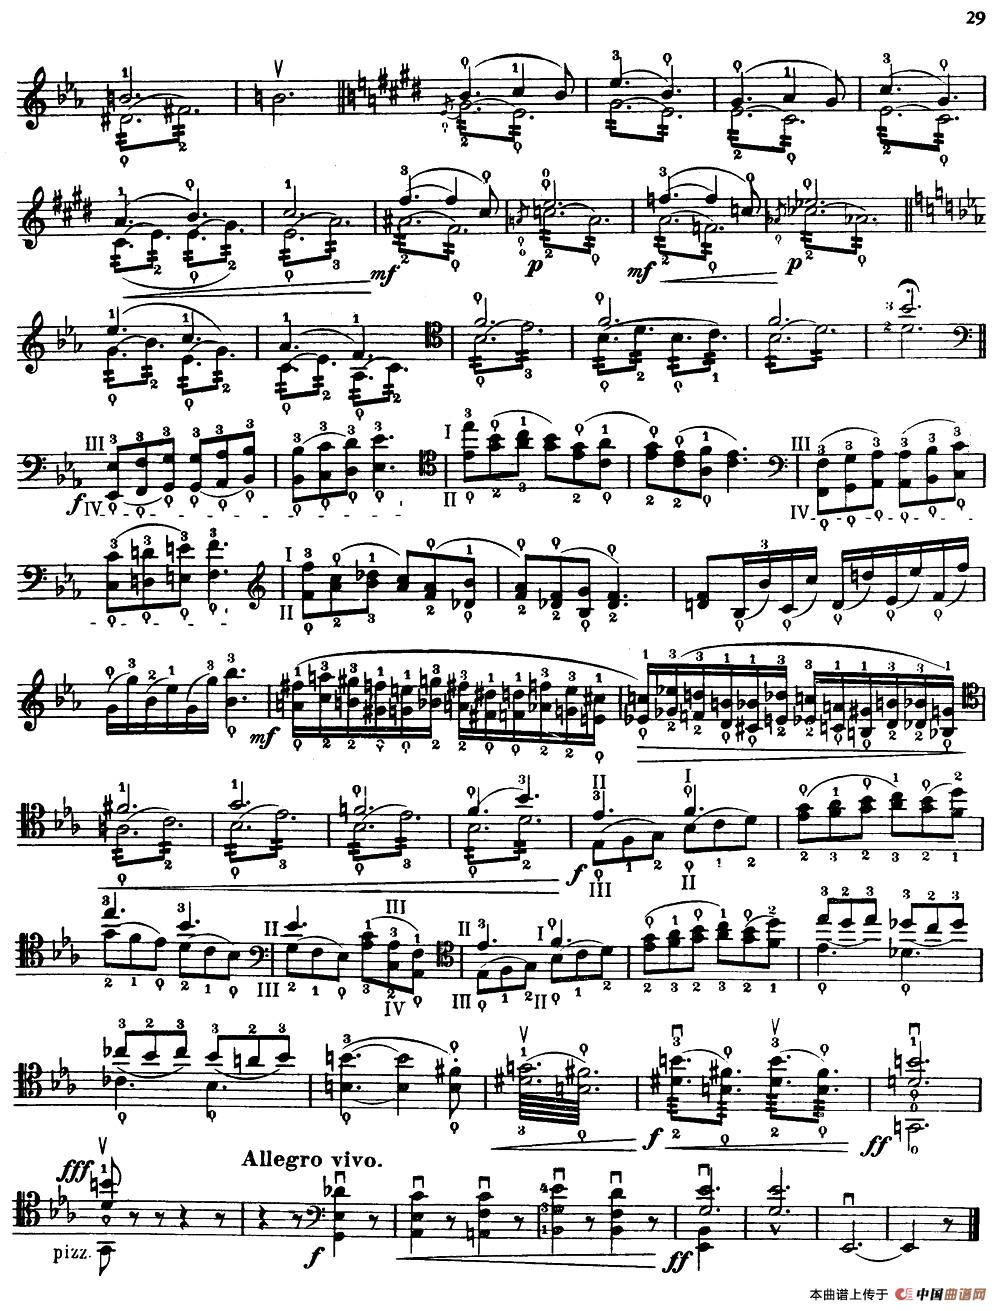 大提琴高级练习曲40首 No.13小提琴谱